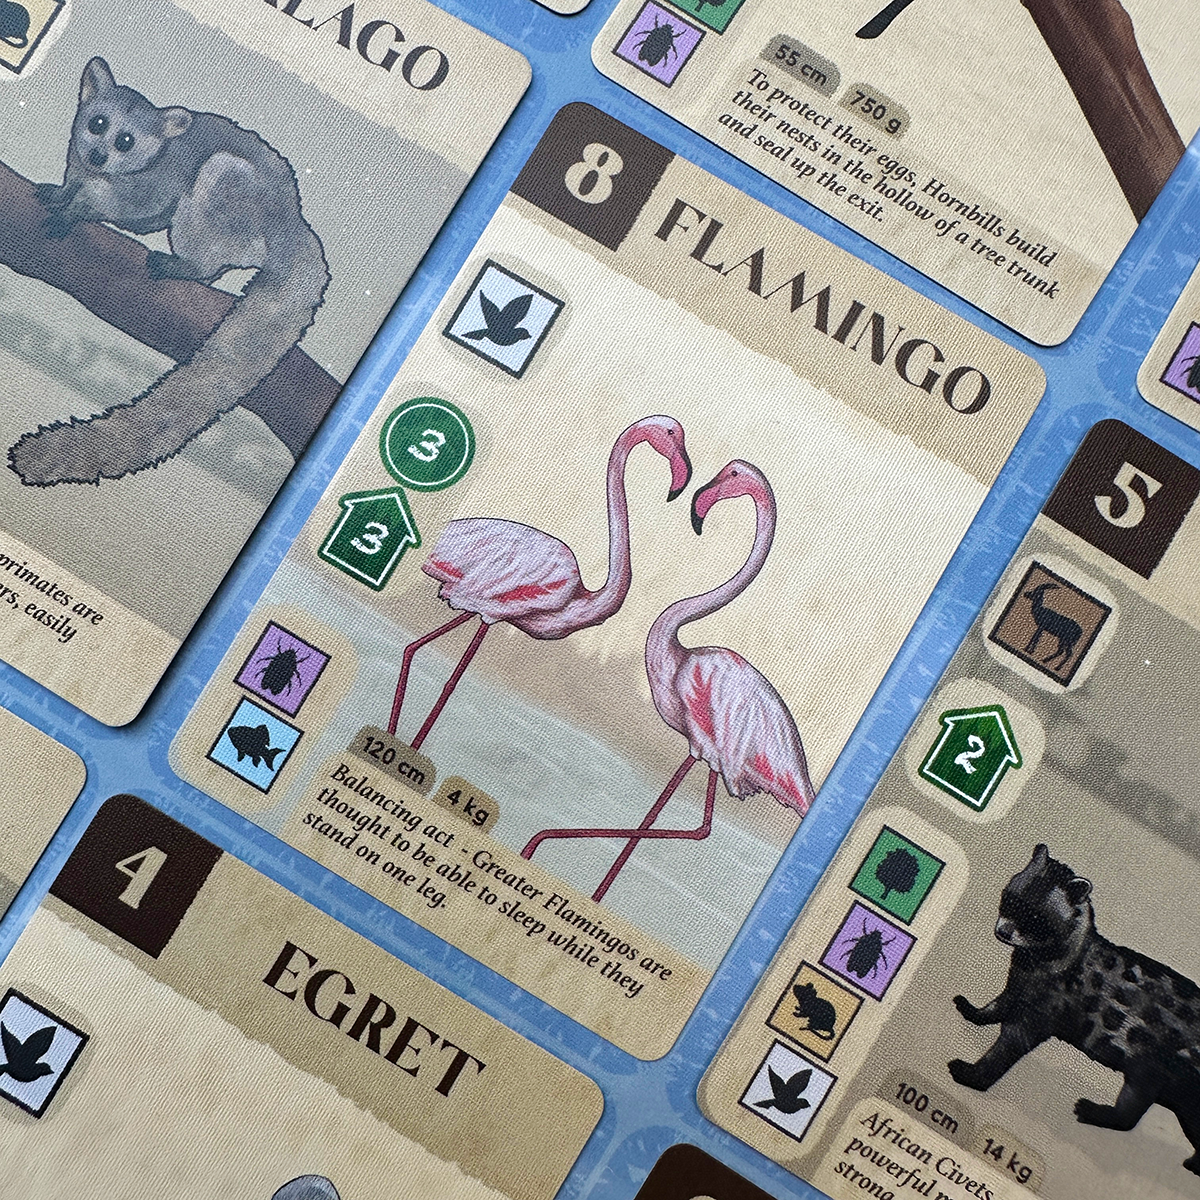 Flamingos in KavangoImage © Board Game Review UK